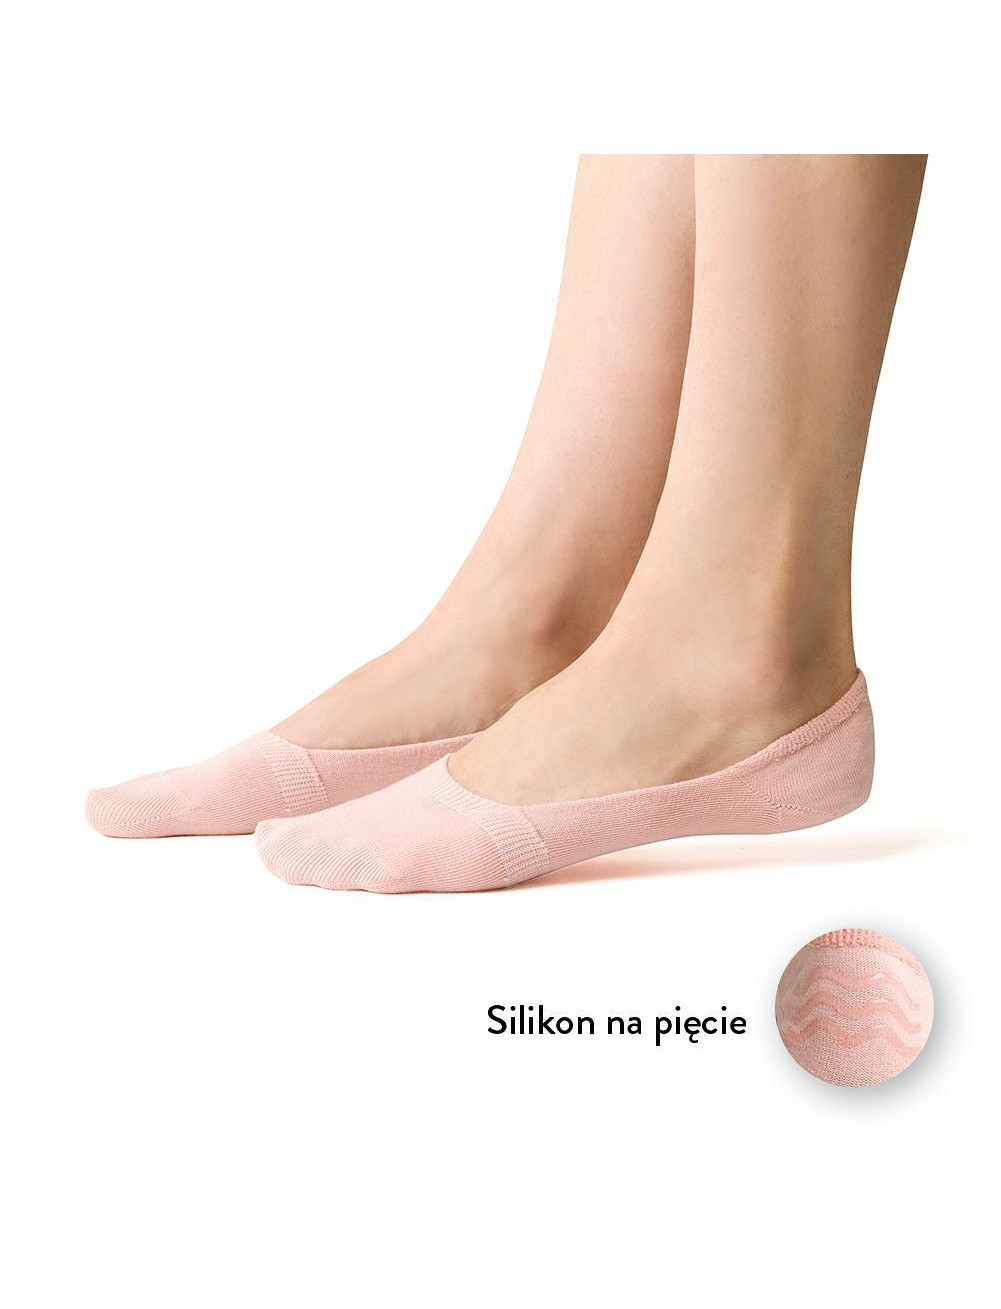 Dámské ponožky baleríny Steven art.058 35-40 černá 35-37